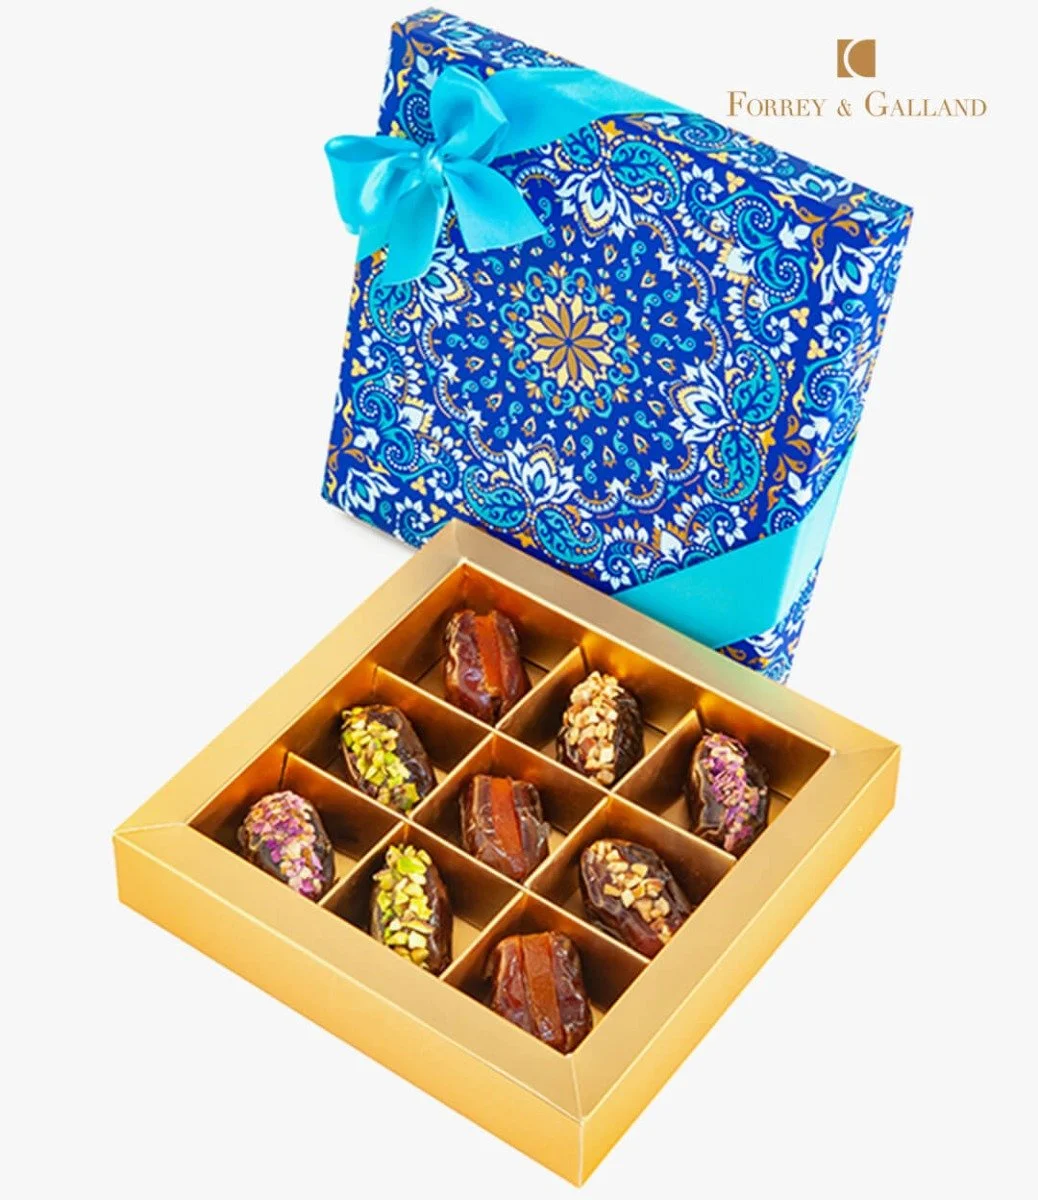 علبة تمور متنوعة من 9 قطع - مجموعة رمضان من فوري وجالاند 